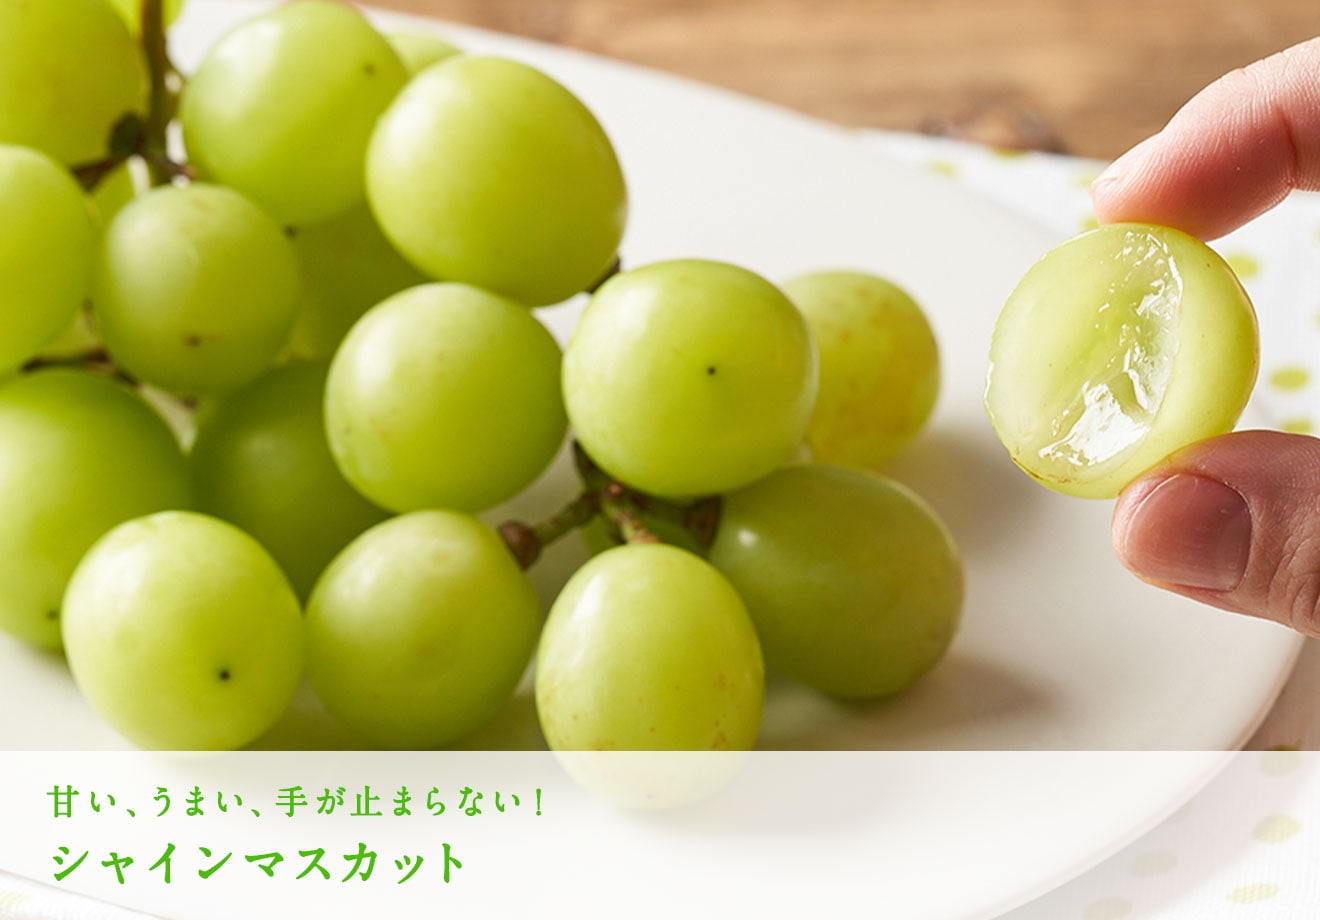 中村さんのずっしりブドウ ｏｉｓｉｘ産直おとりよせ市場